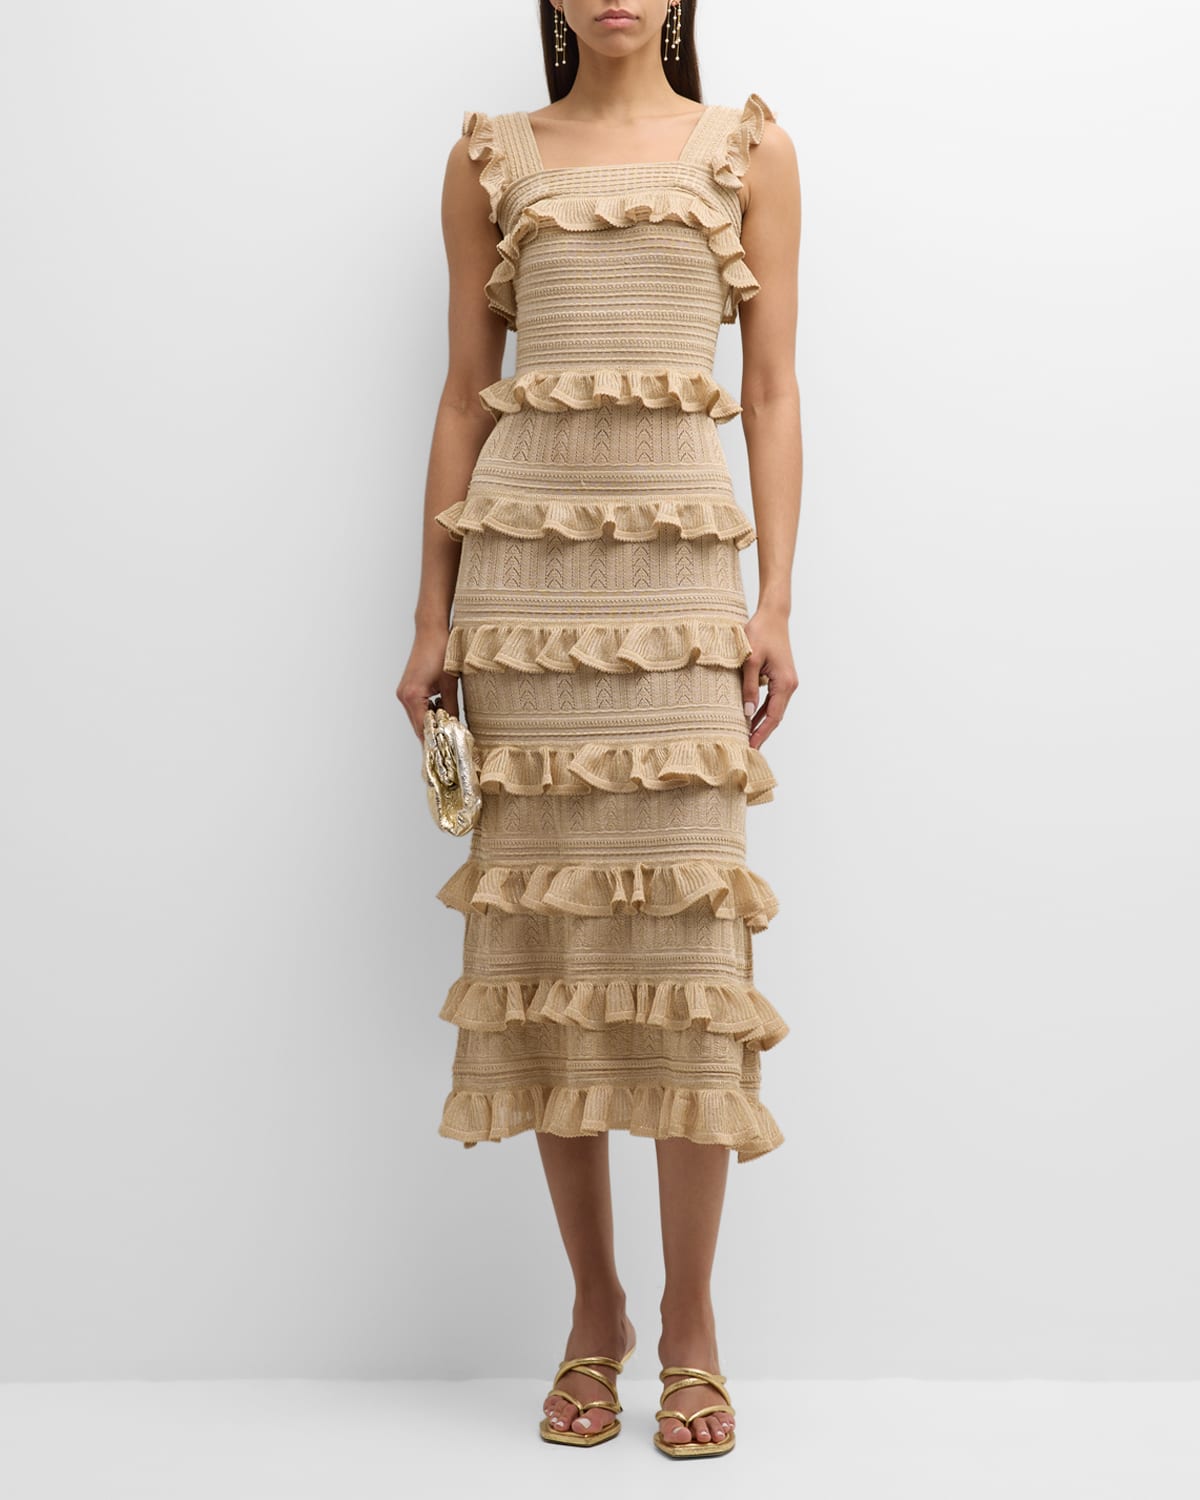 Matchmaker Ruffle Knit Midi Dress